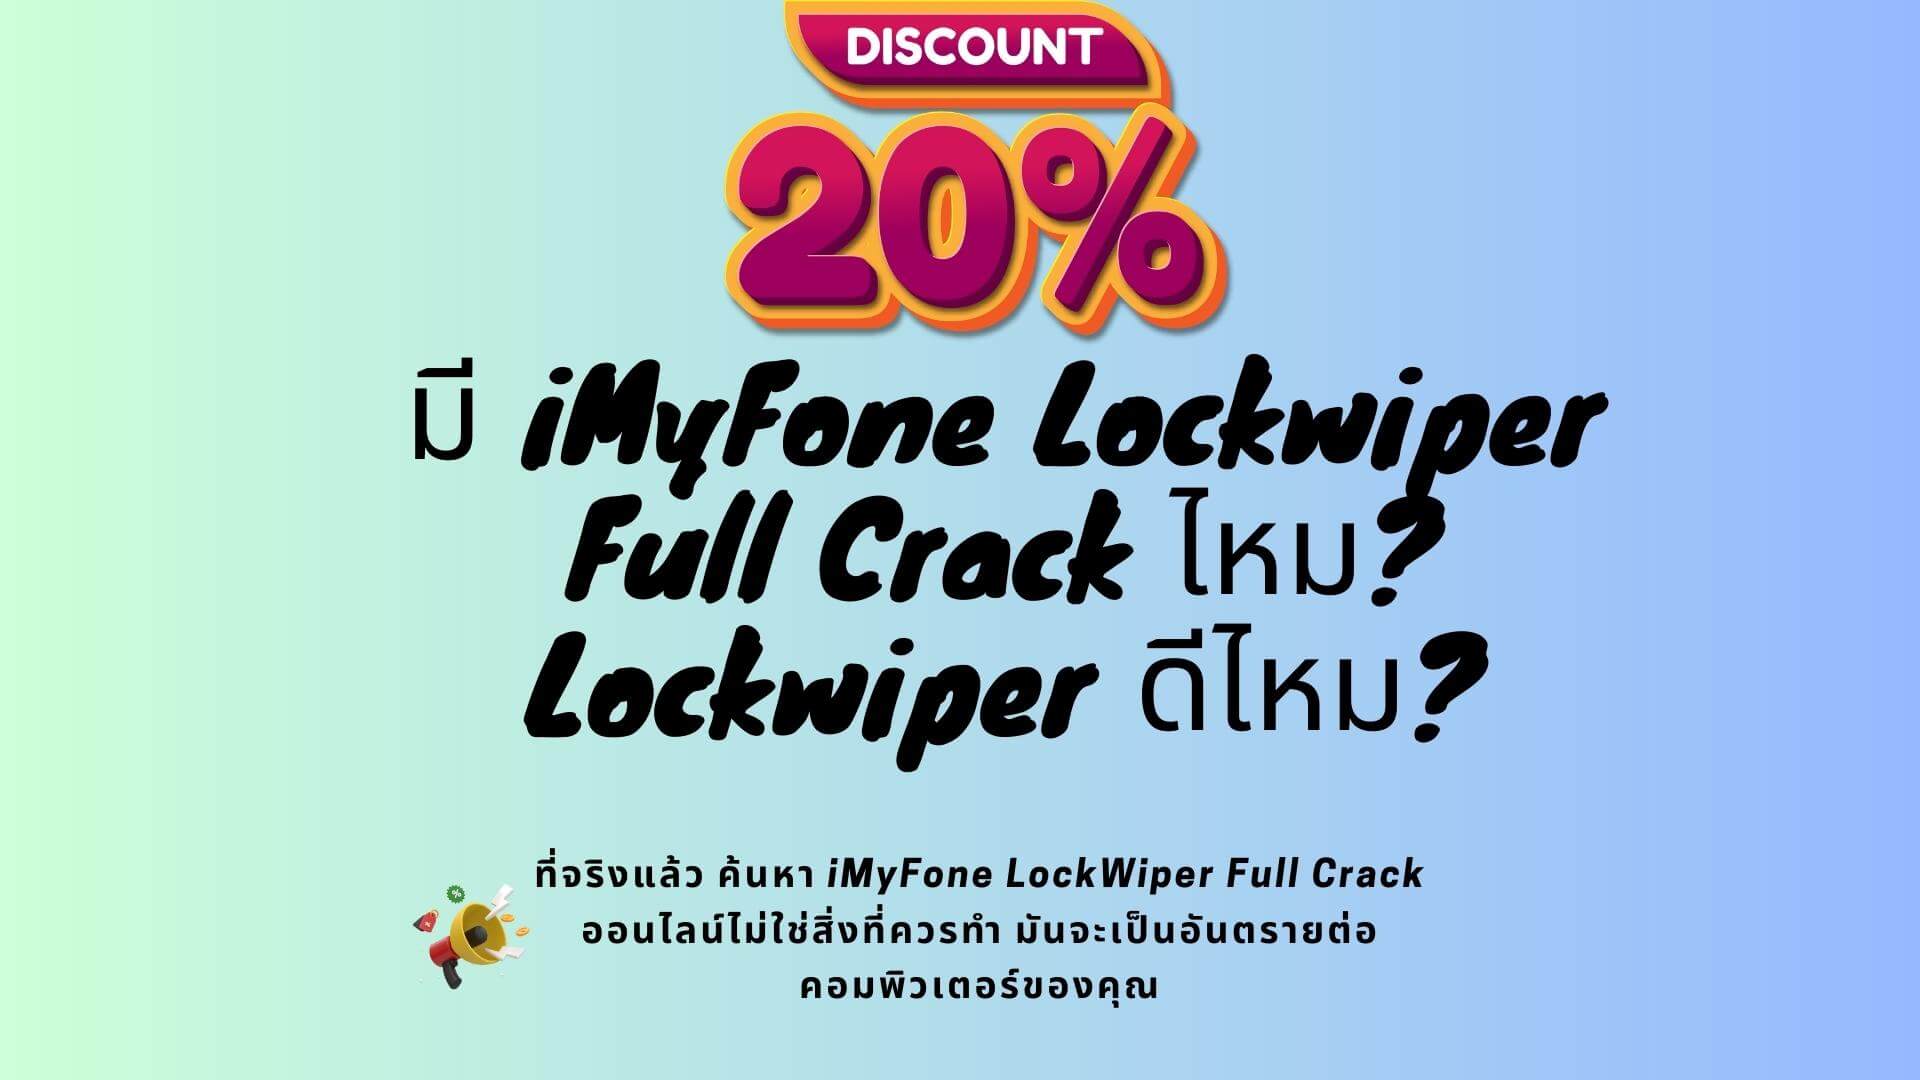 【มีคูปอง】มี iMyFone  Lockwiper Full Crack ไหม?  Lockwiper ดีไหม?